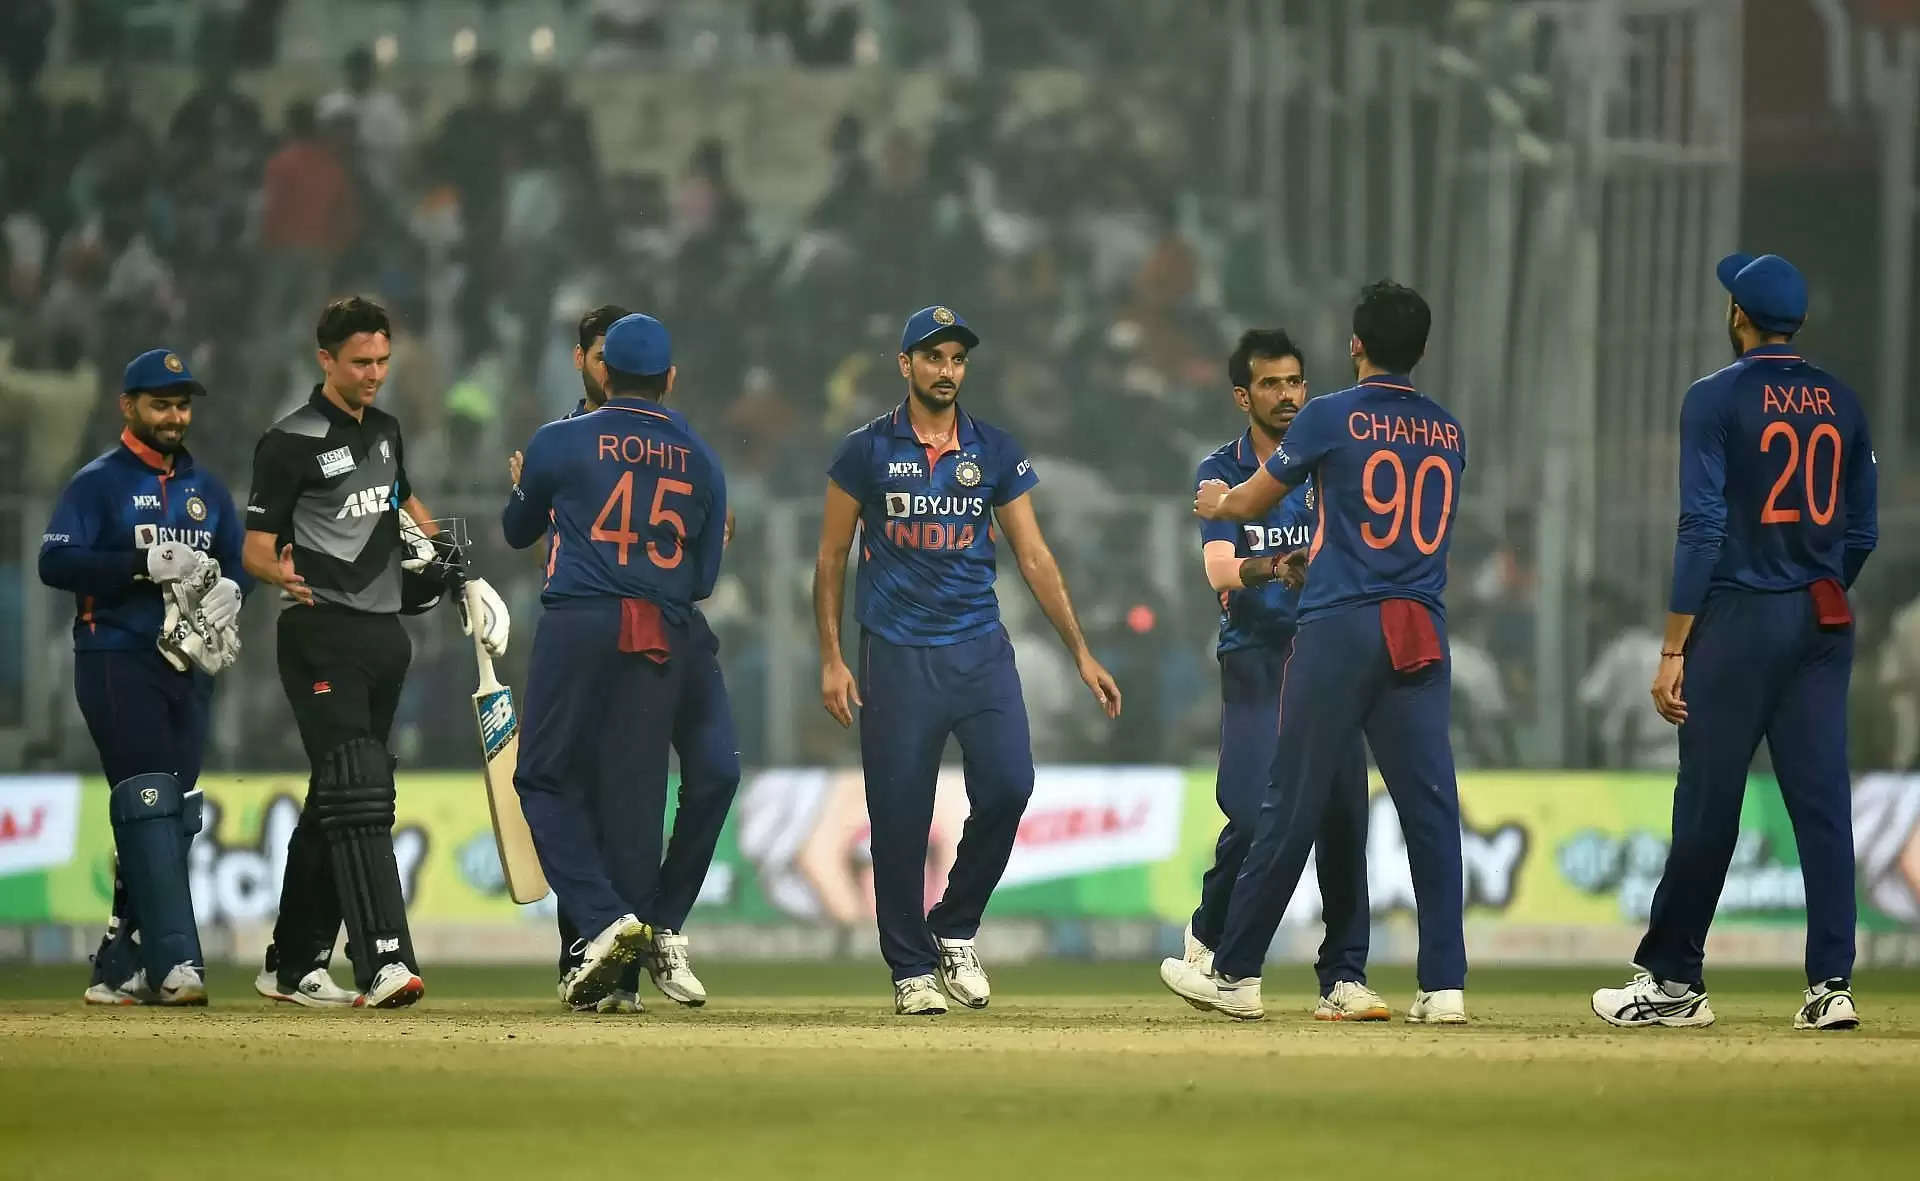 आकाश चोपड़ा ने स्लो ओवर रेट को लेकर आईसीसी के नए नियम को बताया सबसे खतरनाक